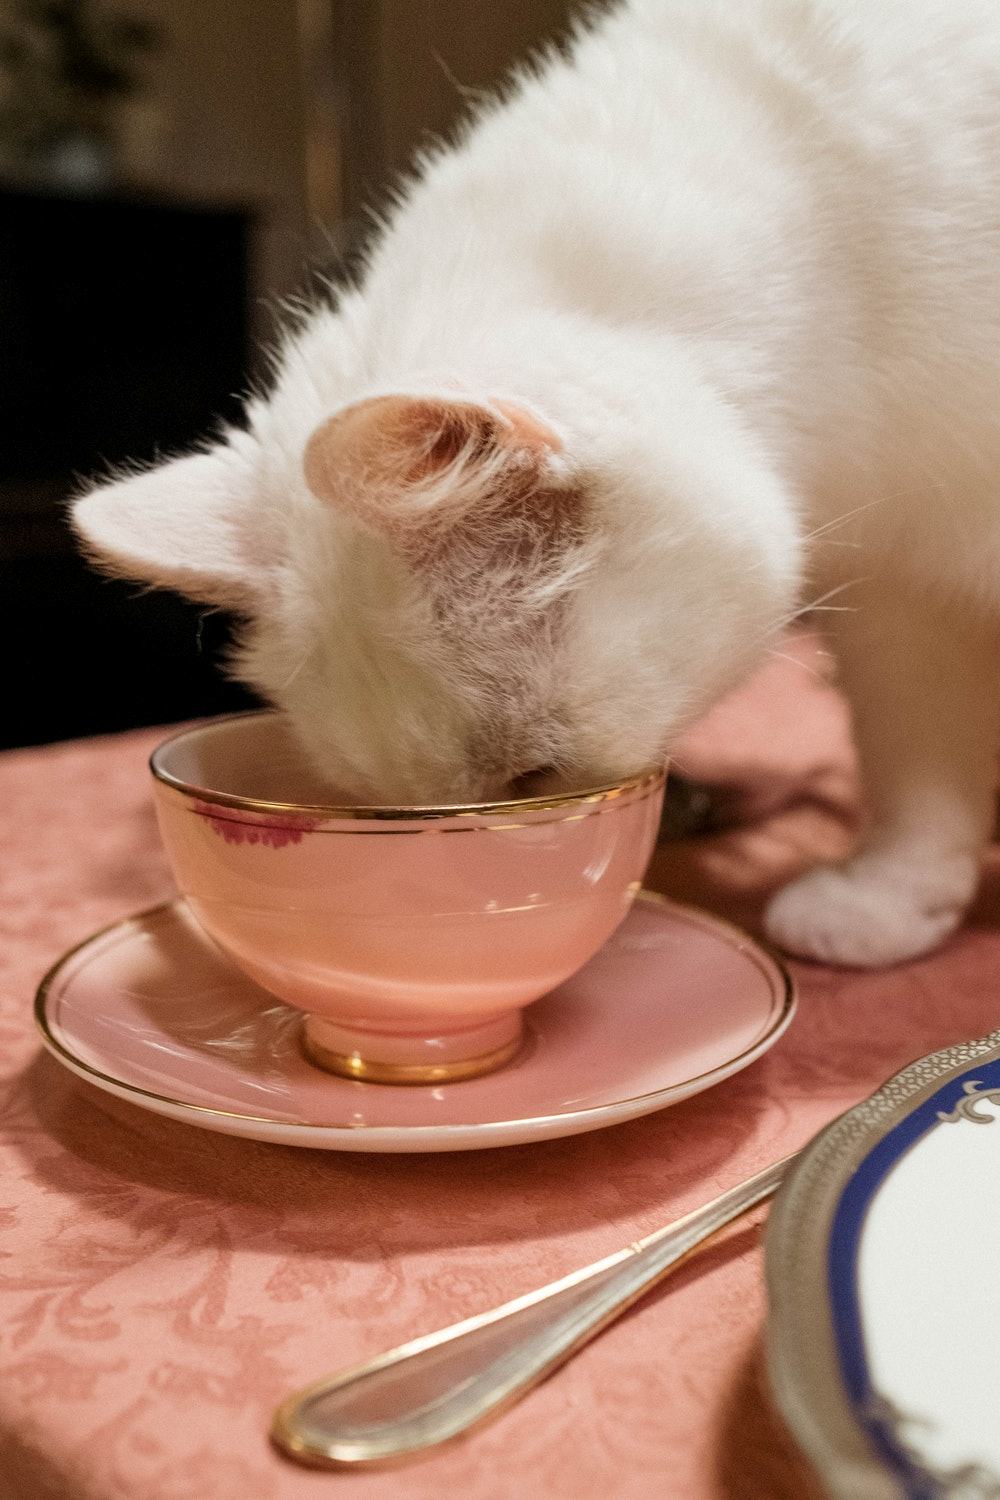 طعام القطط